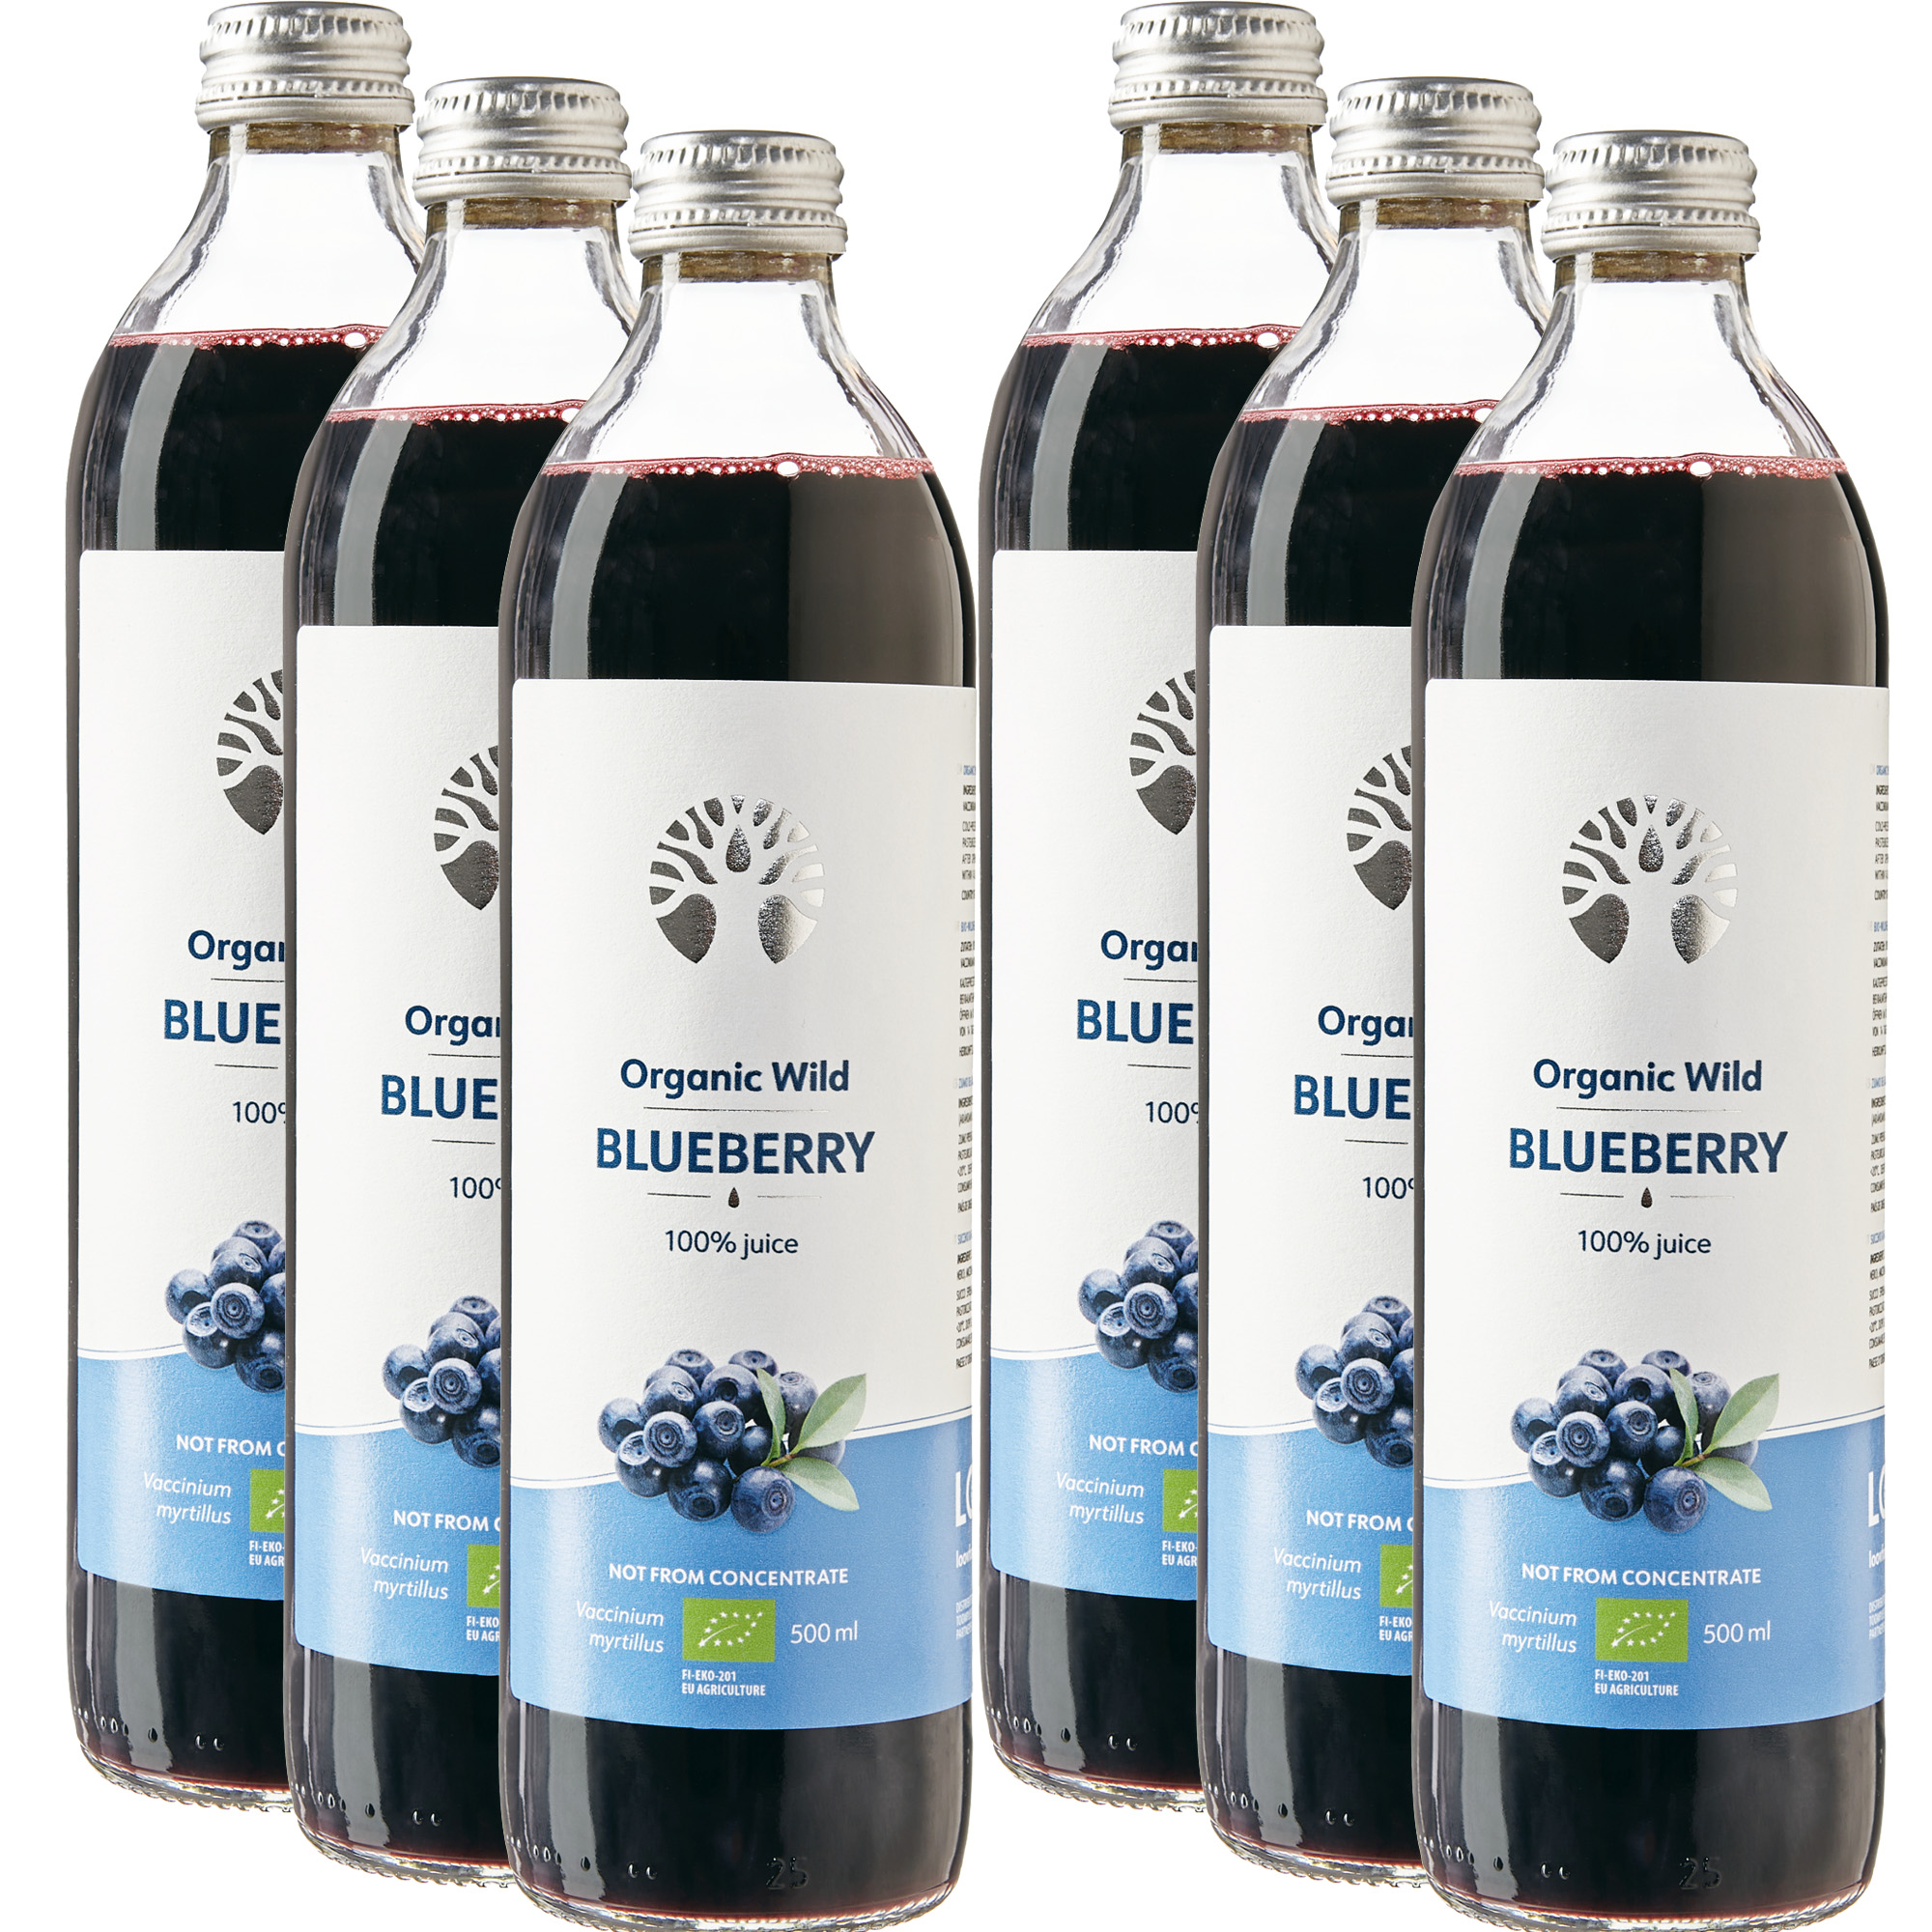 Wilde Blaubeere Sparpaket (6x Organic wild Blueberry) Saft